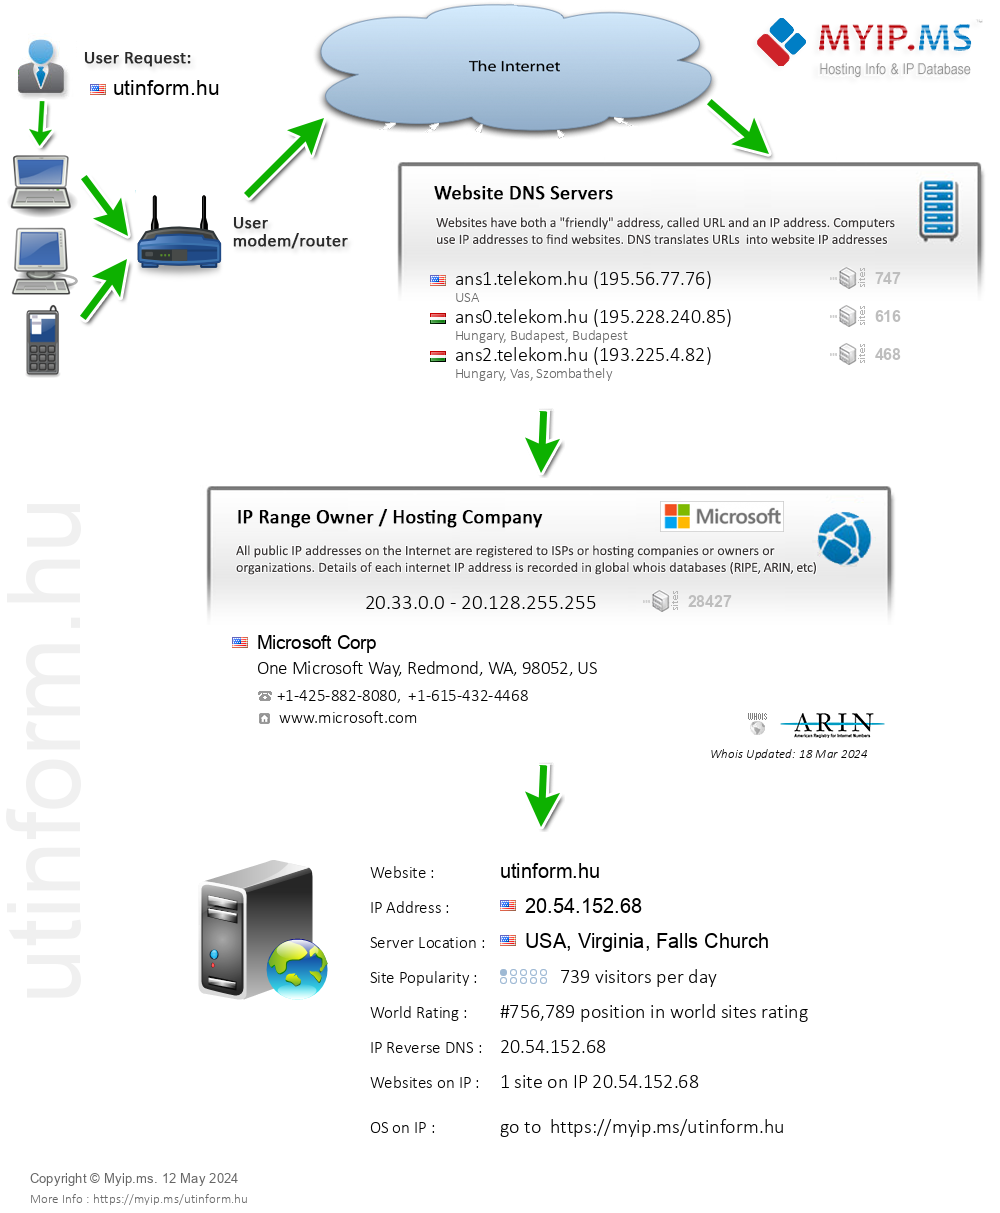 Utinform.hu - Website Hosting Visual IP Diagram